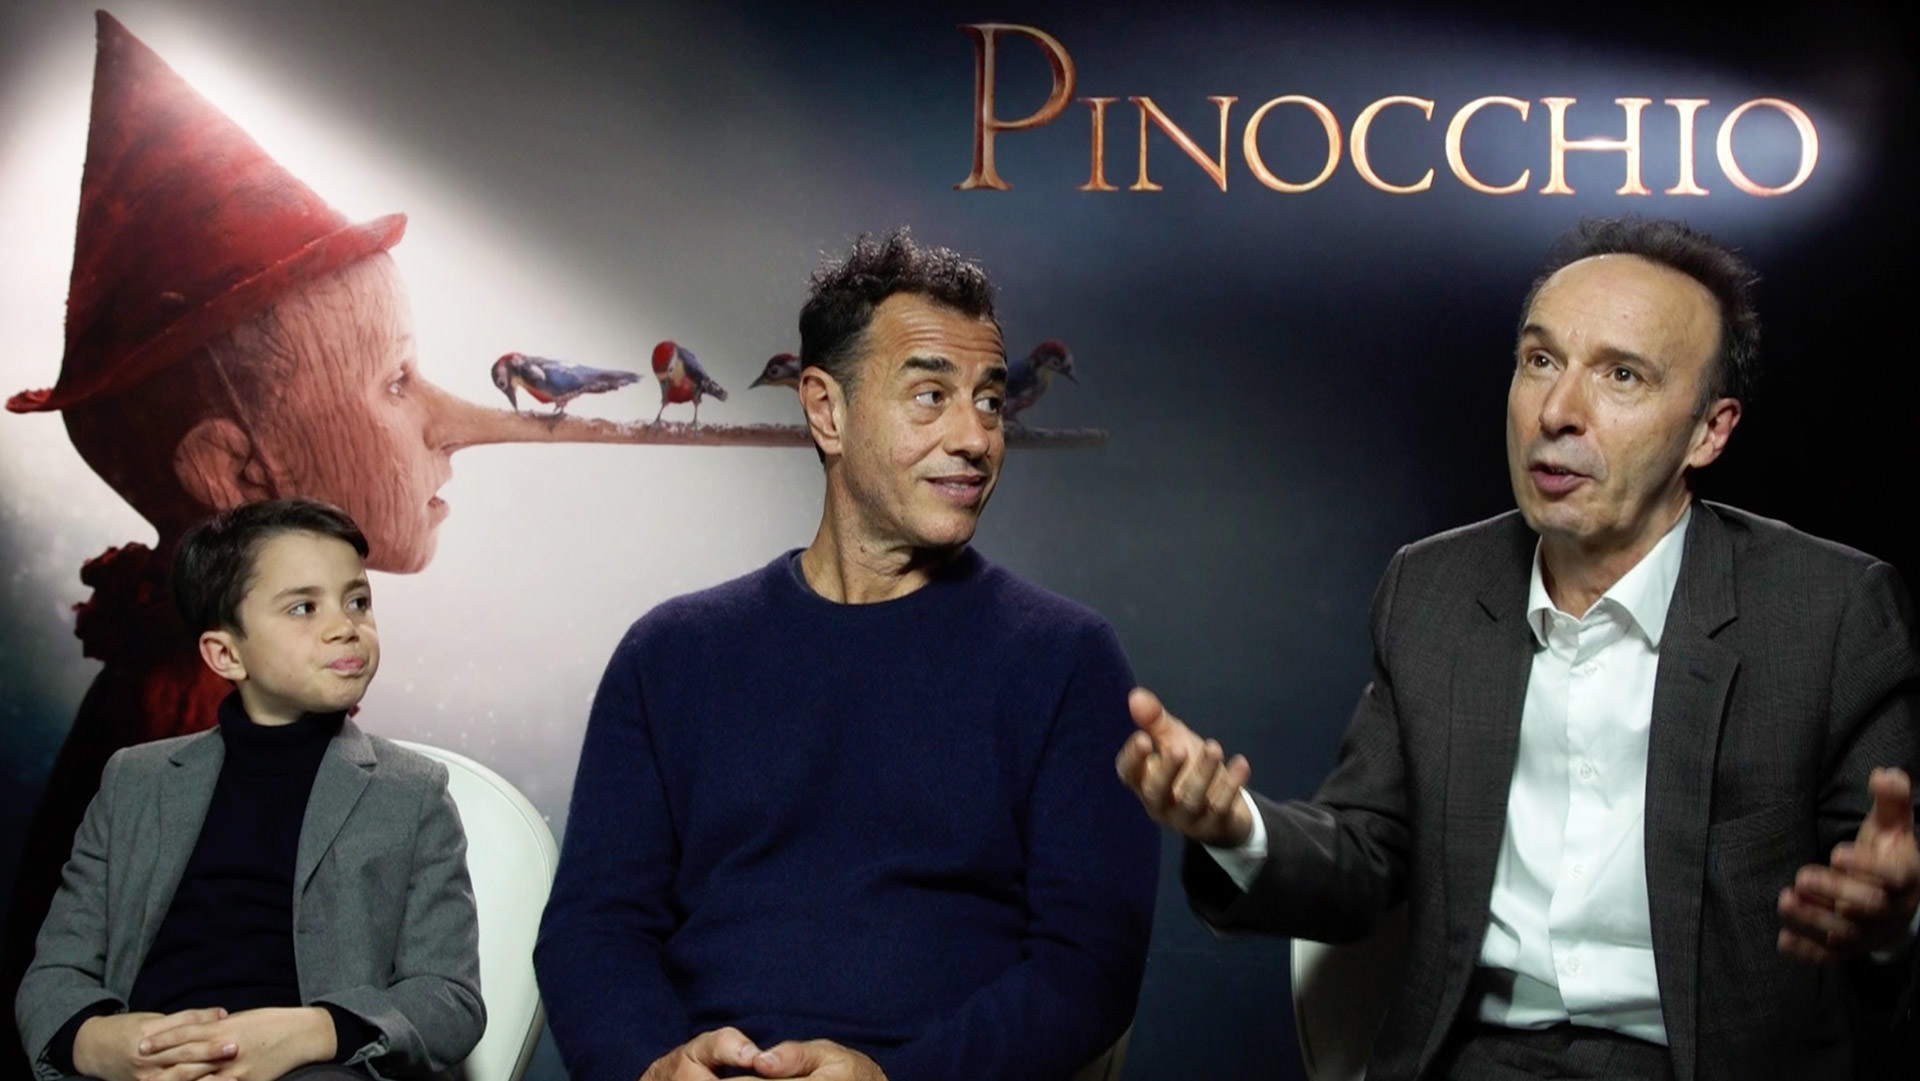 روبرتو بنینی ماتئو گراونه و فدریکو لیلاپی در نمایش فیلم پینوکیو